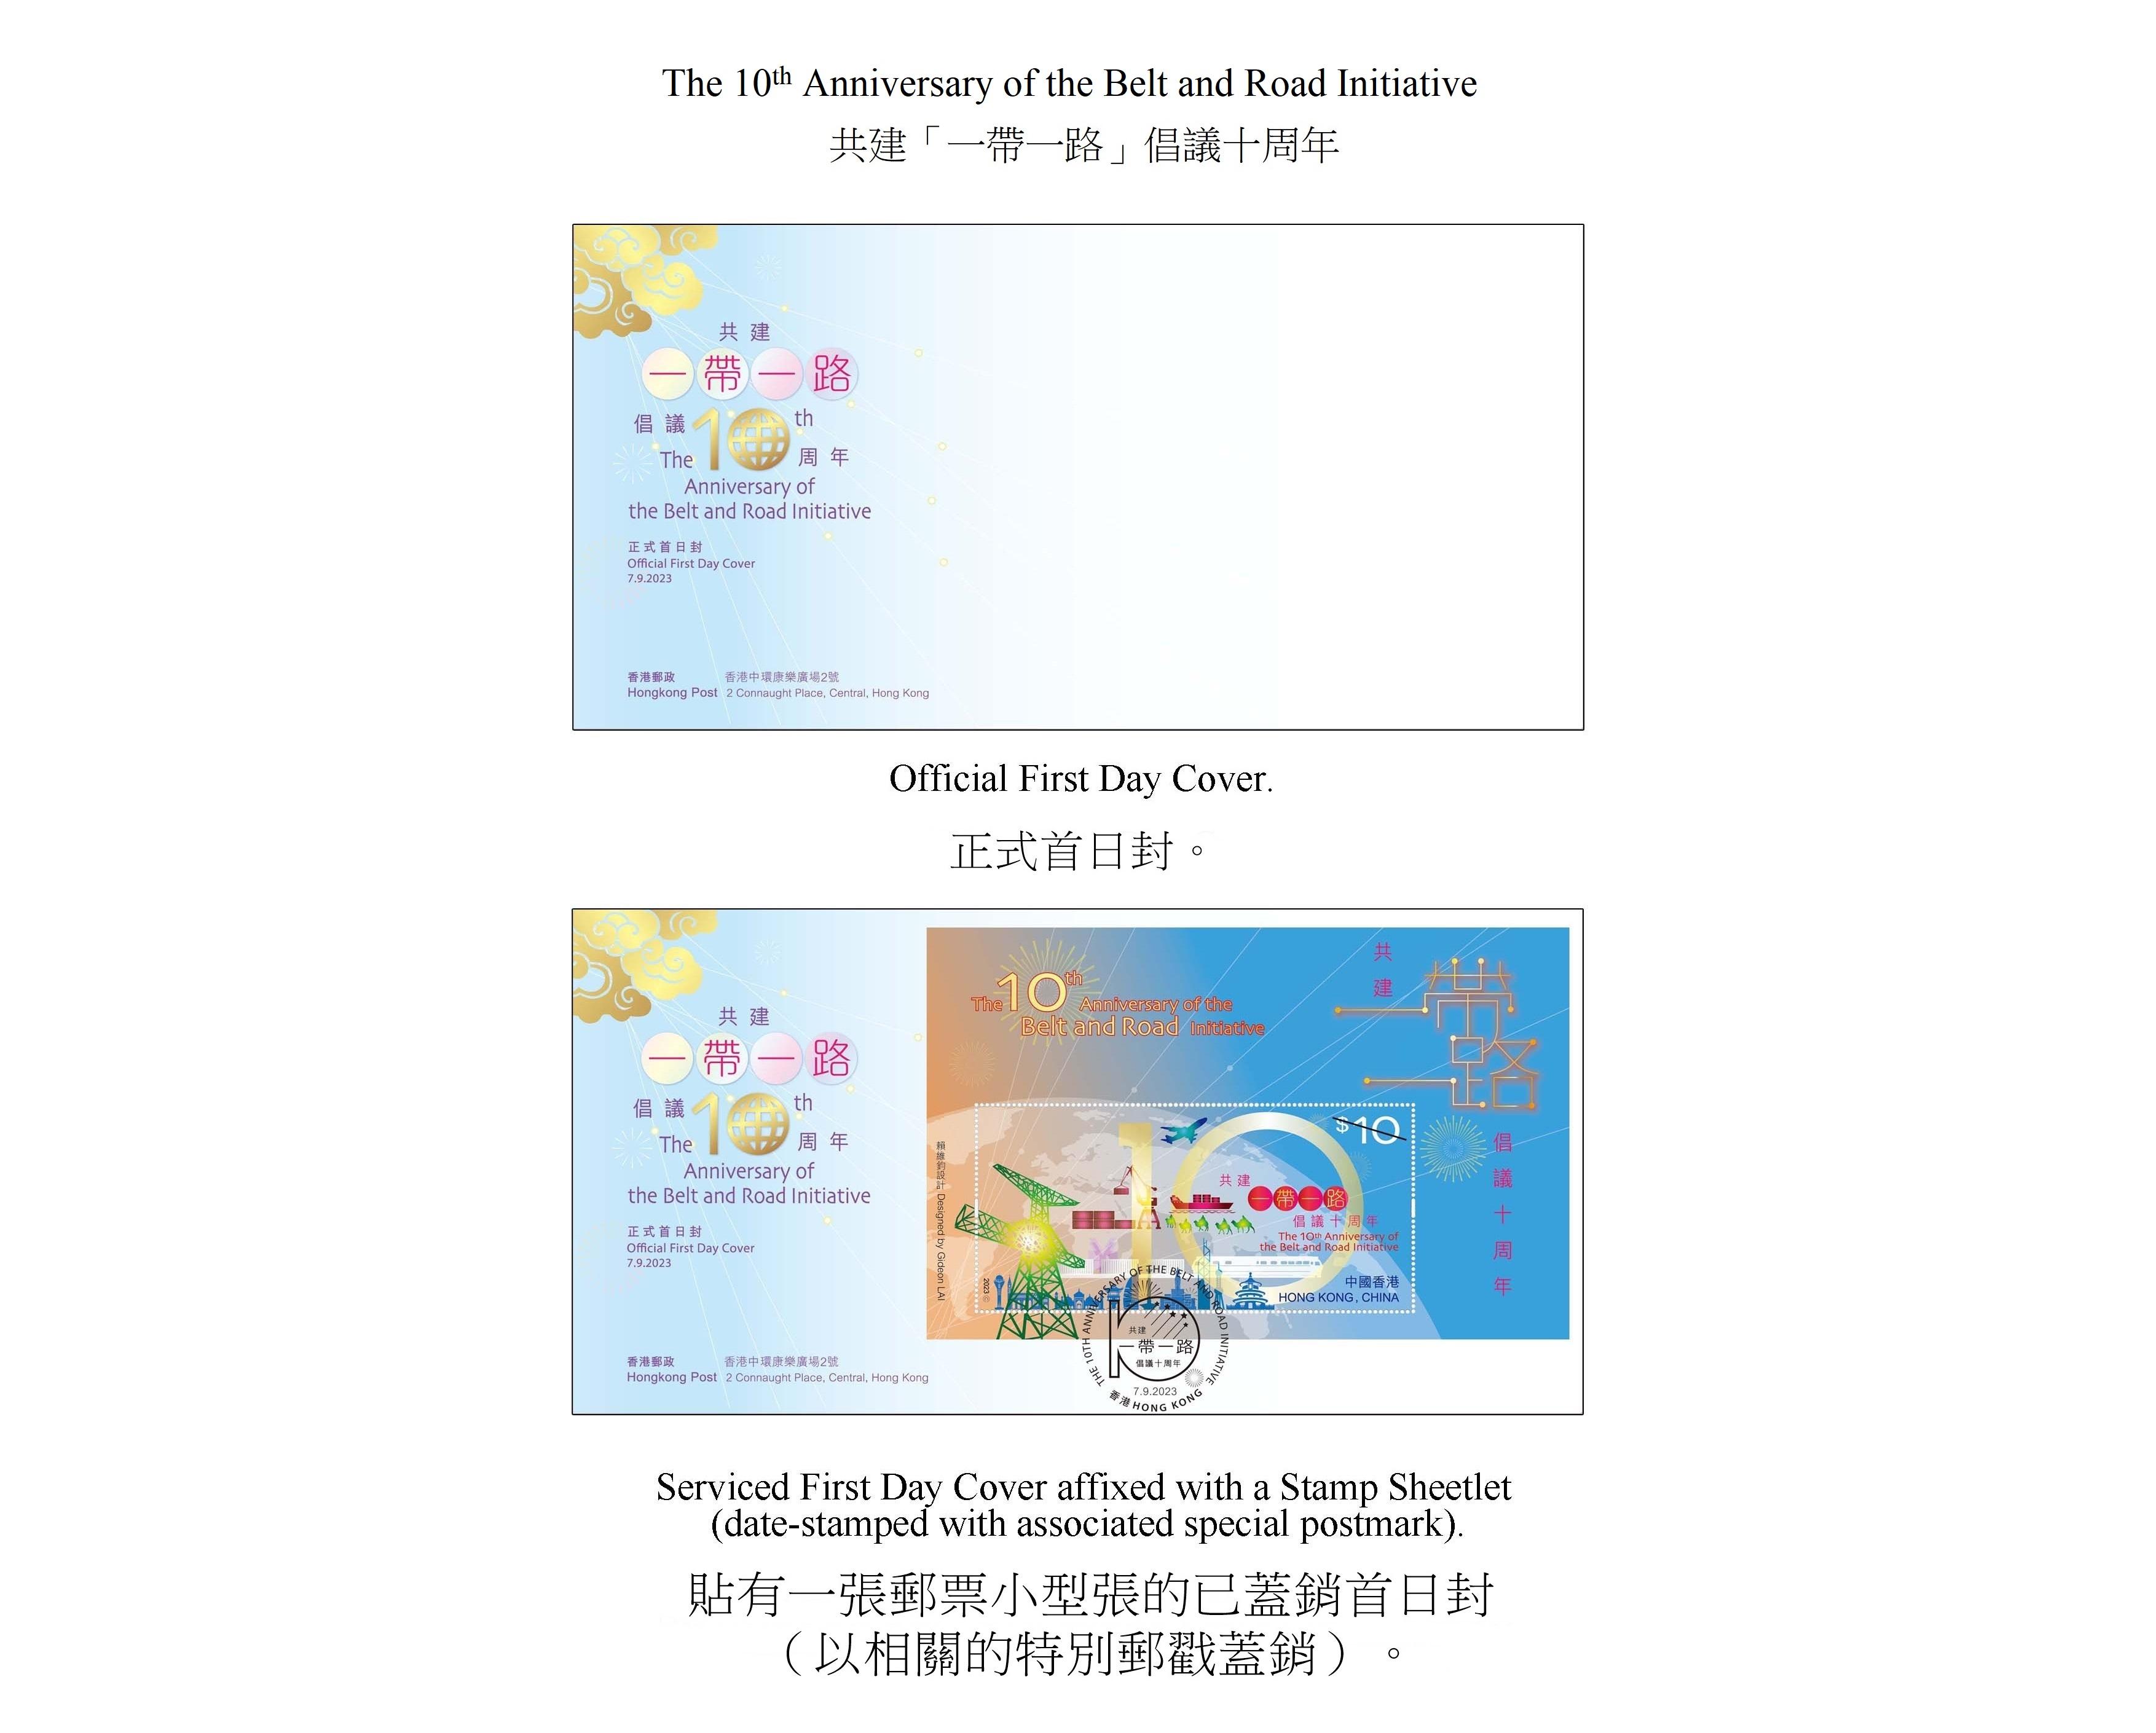 香港邮政九月七日（星期四）发行以「共建『一带一路』倡议十周年」为题的特别邮票及相关集邮品。图示首日封。